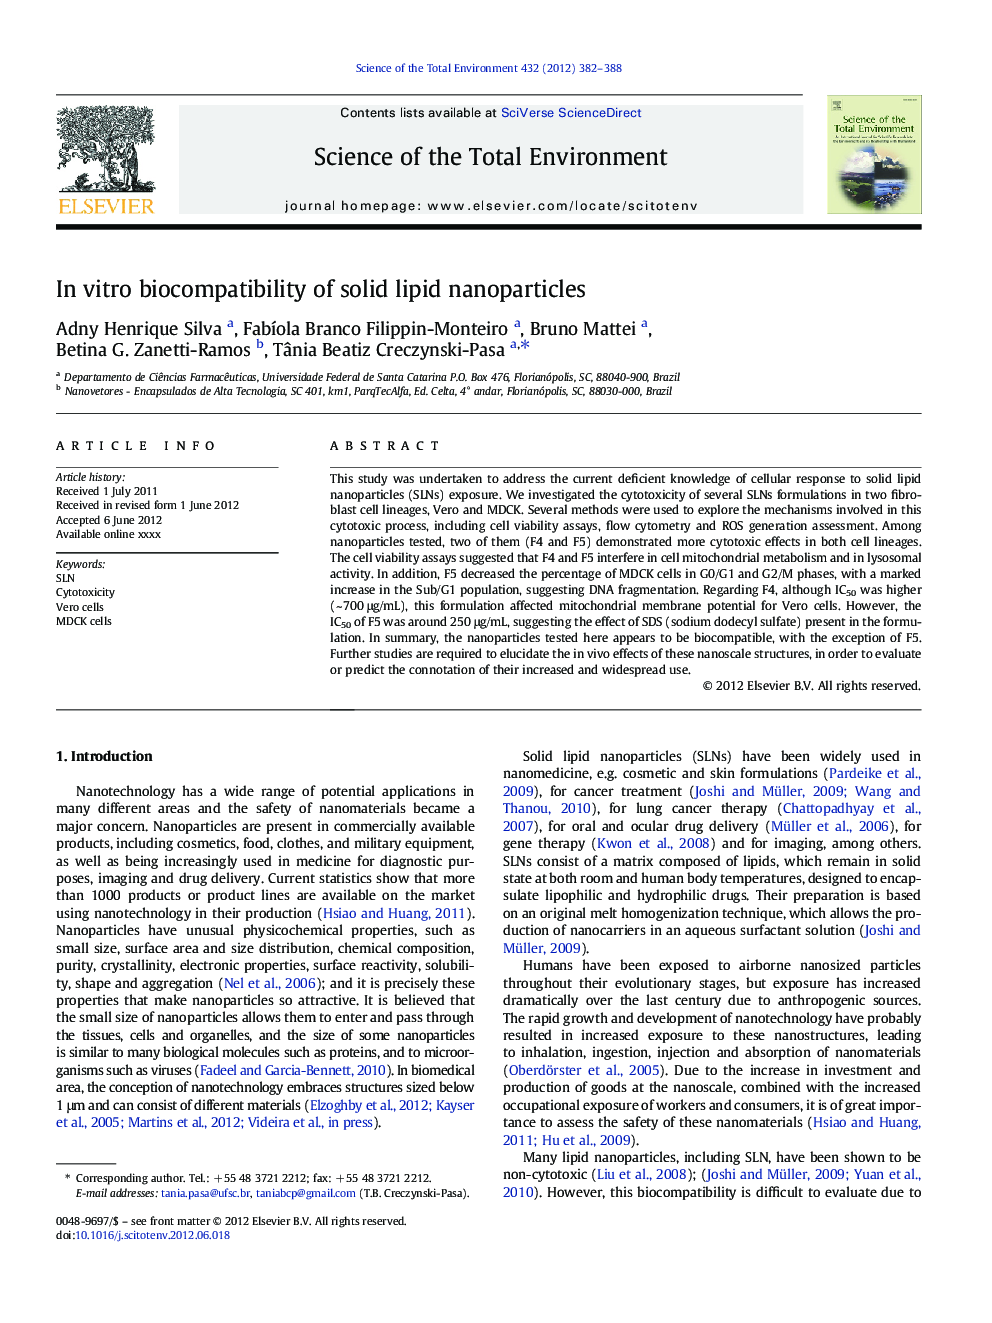 In vitro biocompatibility of solid lipid nanoparticles